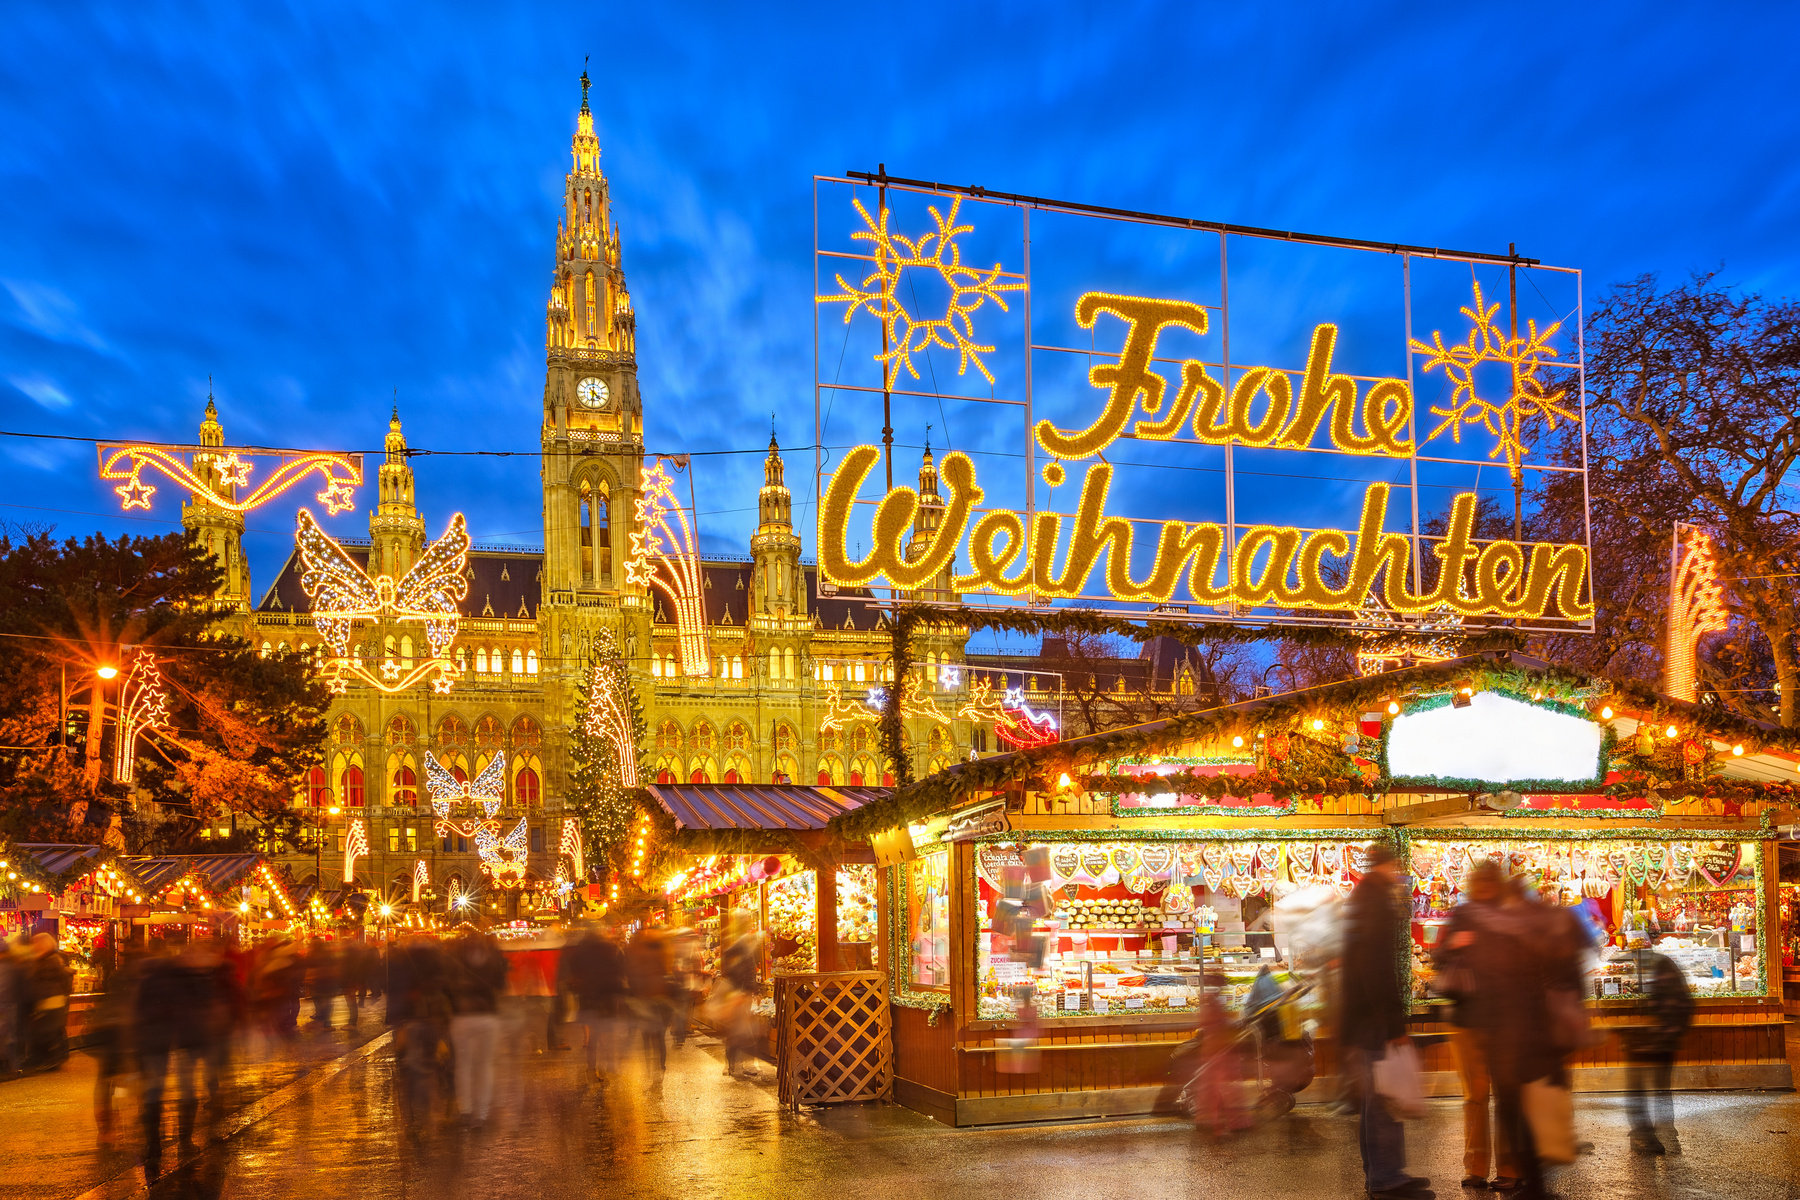 A szintén franciaországi Metzben egyből hat karácsonyi vásár közül választhatsz. Itt is van minden, ami csak szem-szájnak ingere: óriáskerék, jégpálya, kézműves ajándékok, forralt bor, forró csoki és a legfinomabb mézeskalács, amivel valaha is dolgod volt. 